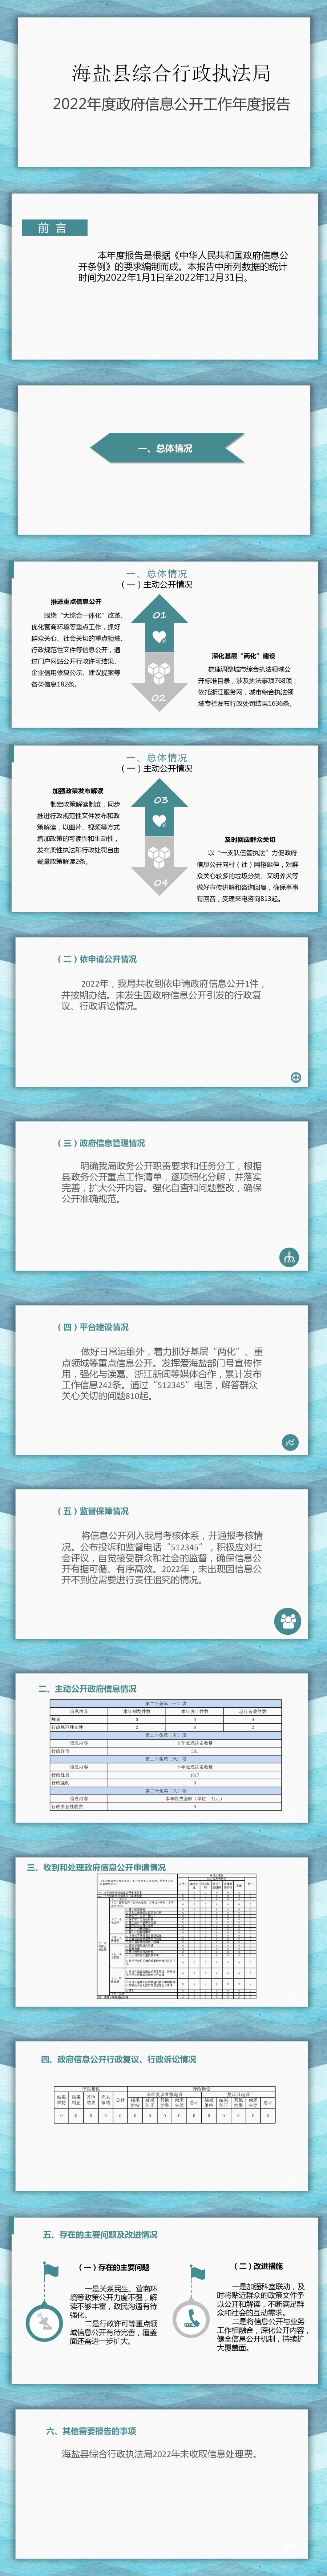 海盐县综合行政执法局2022年政府信息公开工作年度报告.jpg